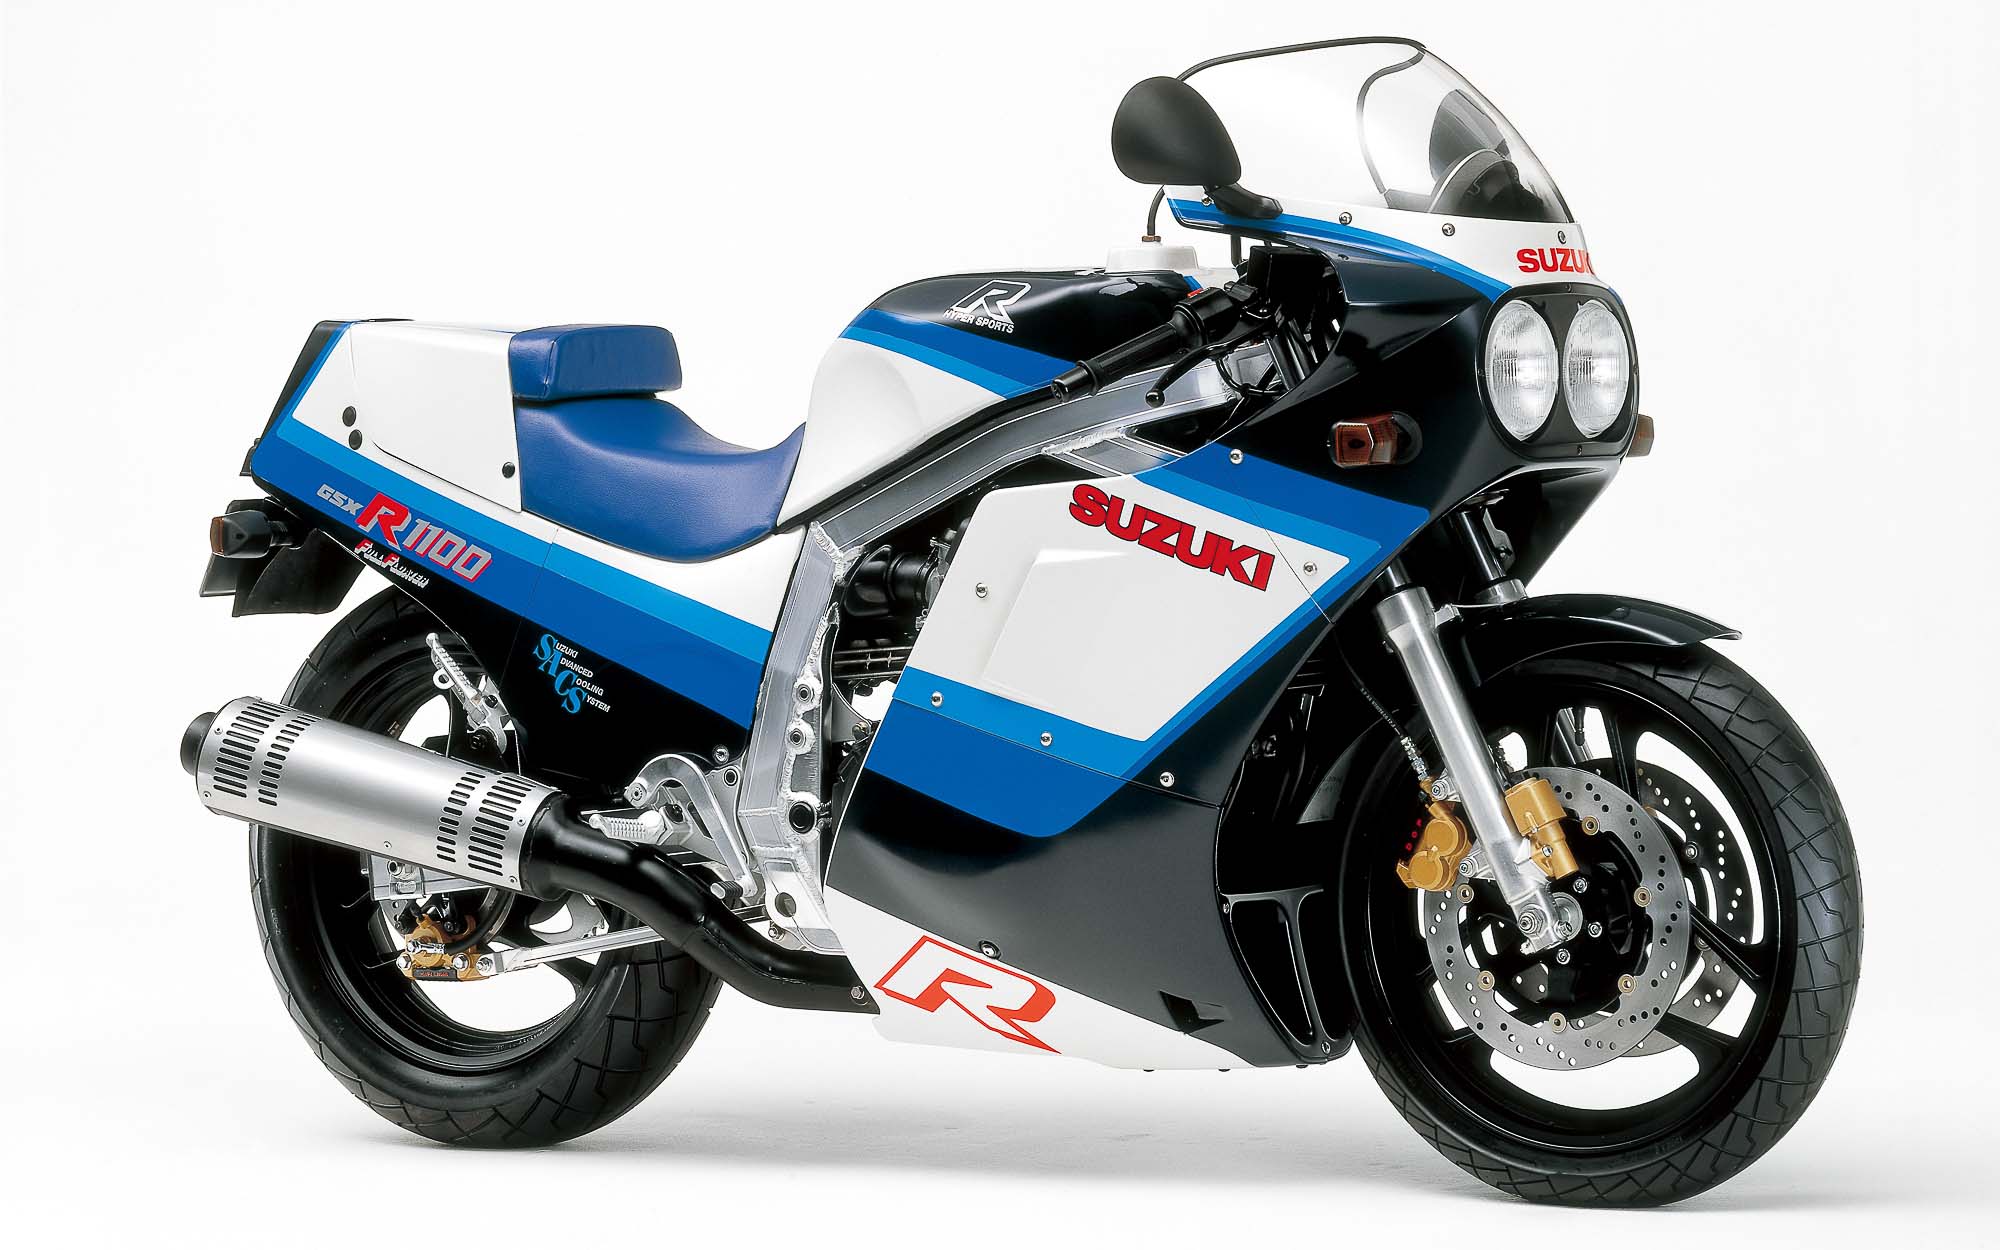 Die Suzuki GSX-R750 gilt als erster Supersportler